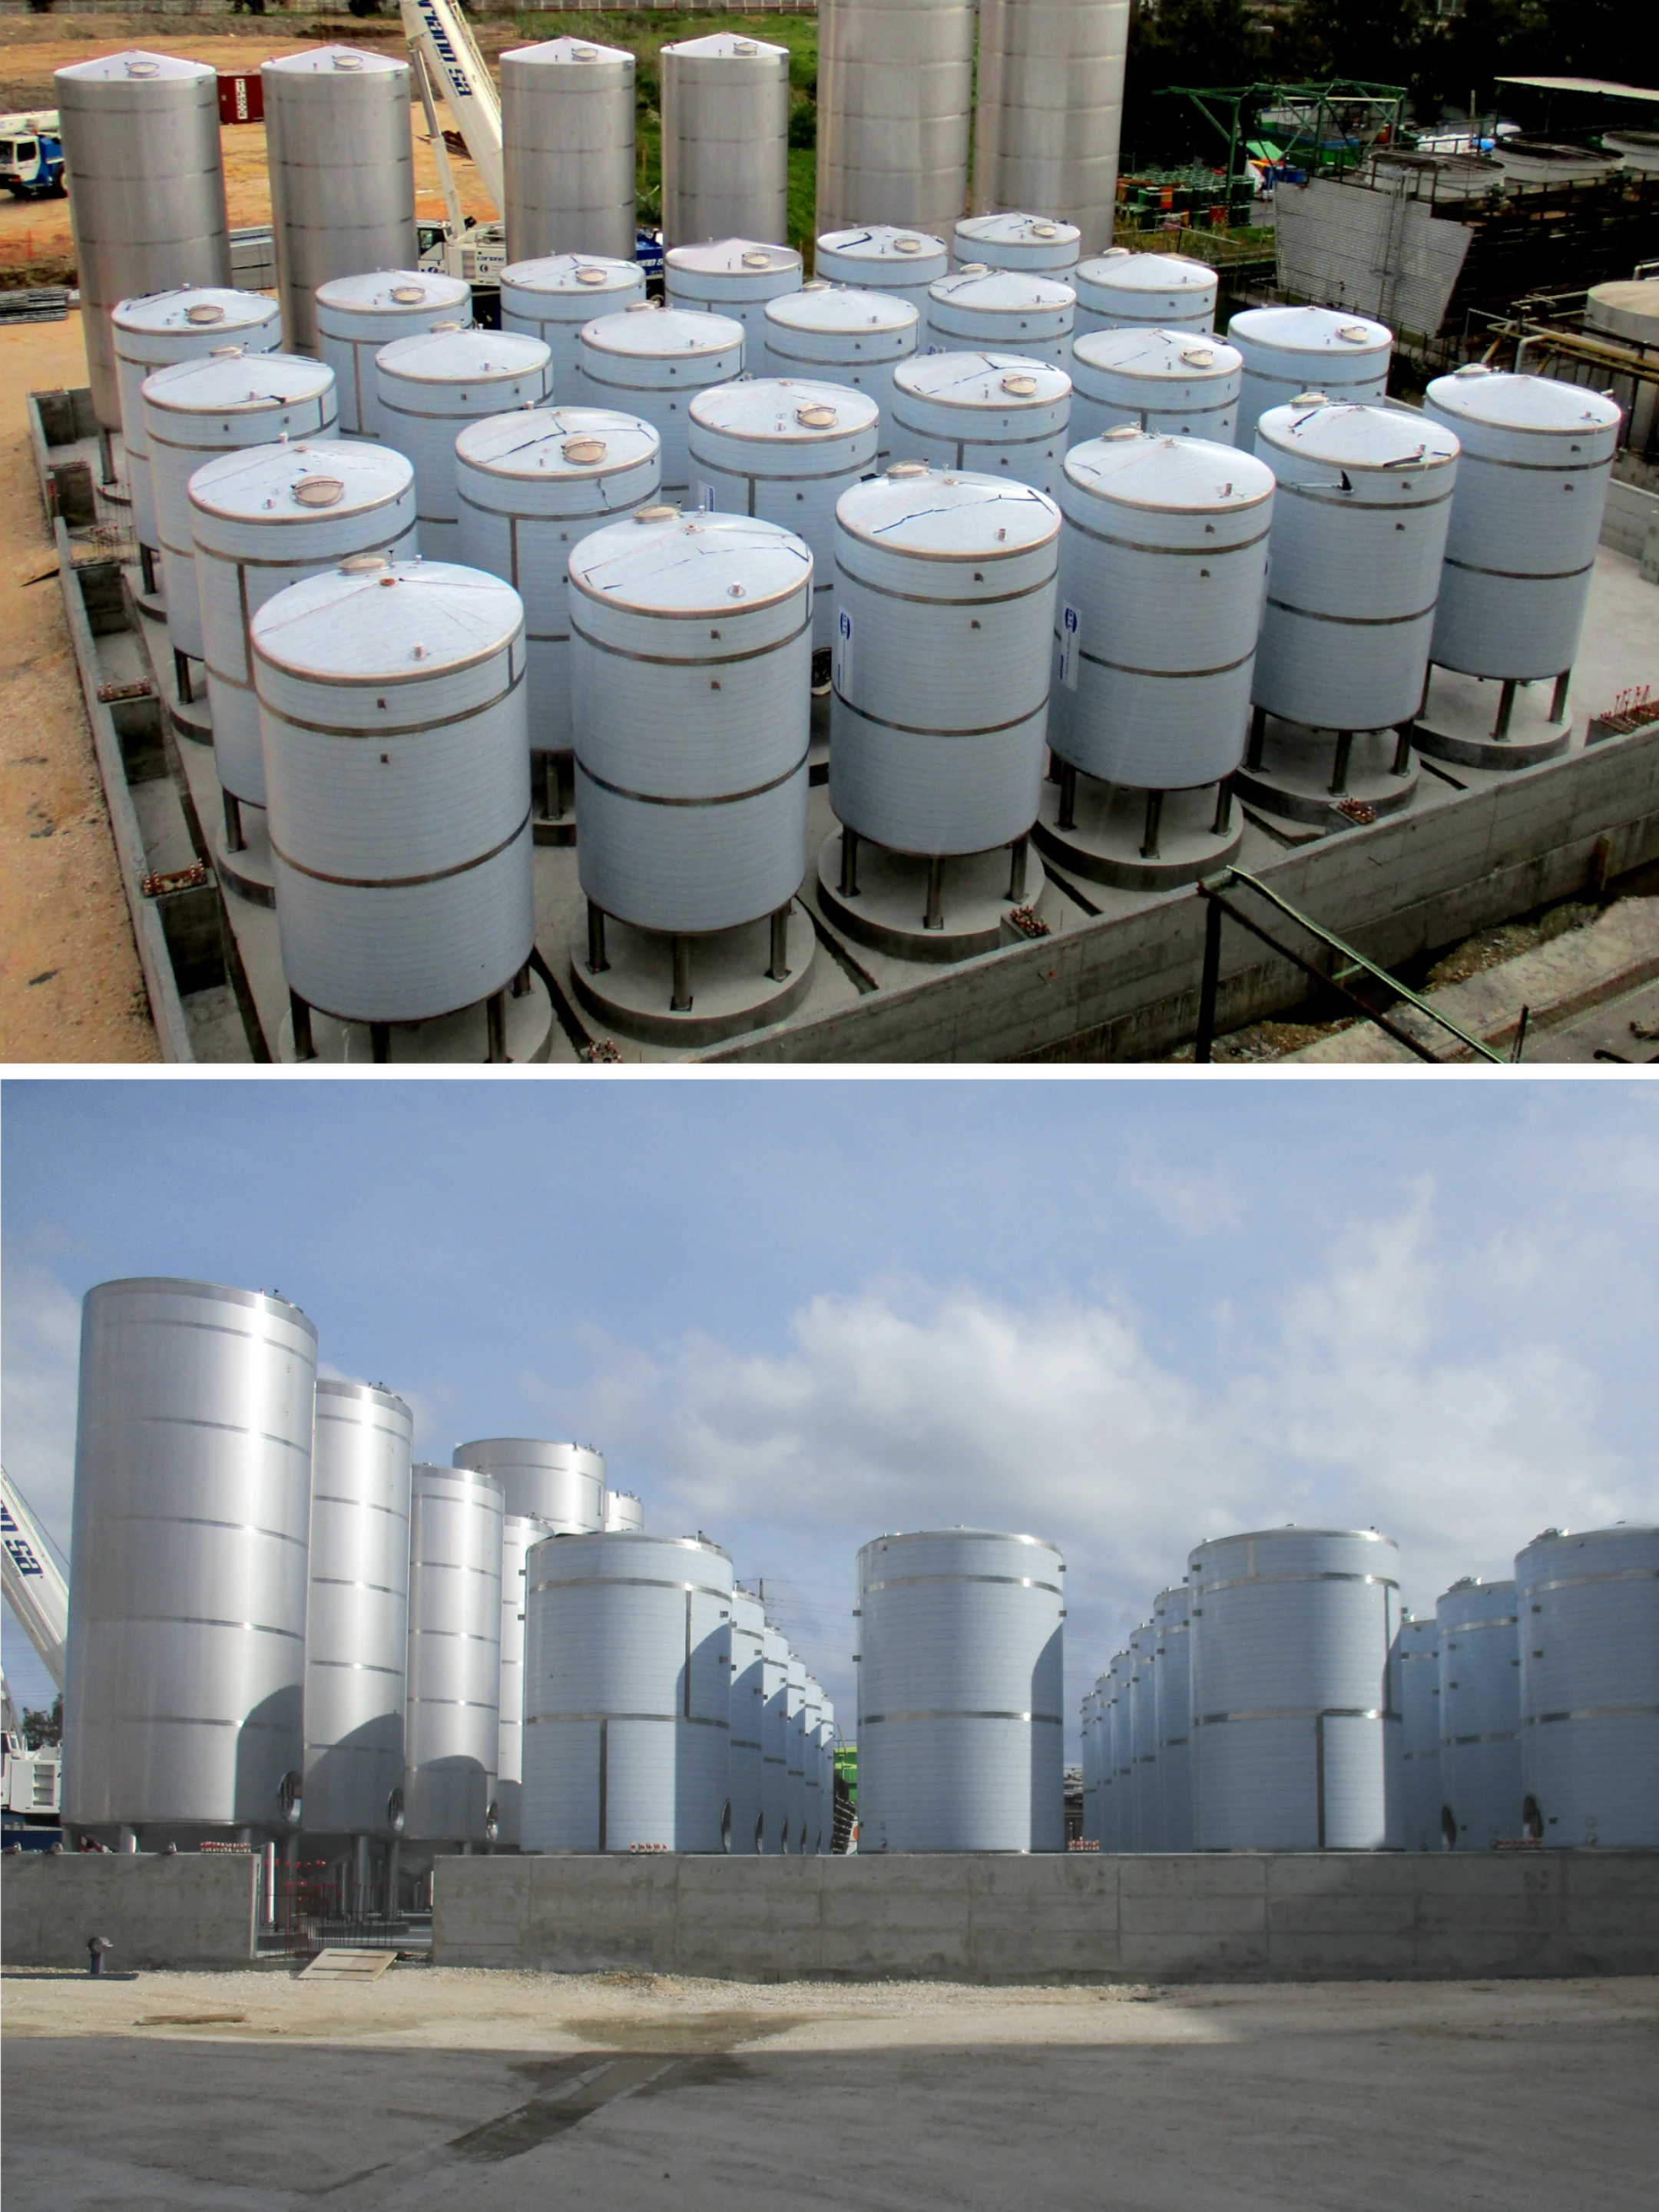 BTL Storage tanks in stainless steel - Food Industry